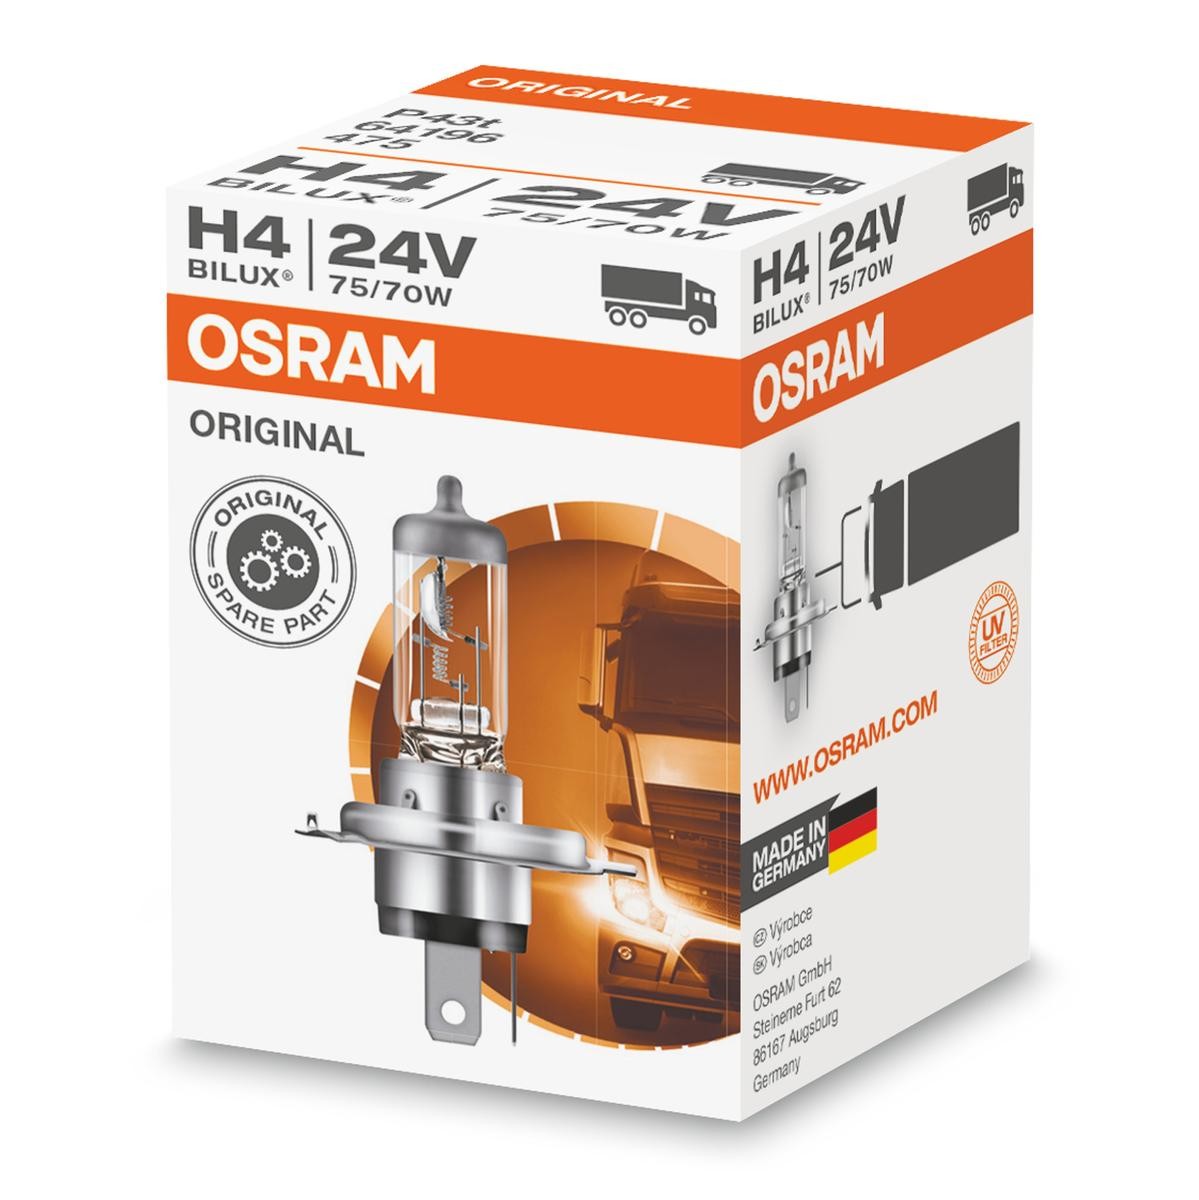 OSRAM NIGHT BREAKER H7 ➤ AUTODOC